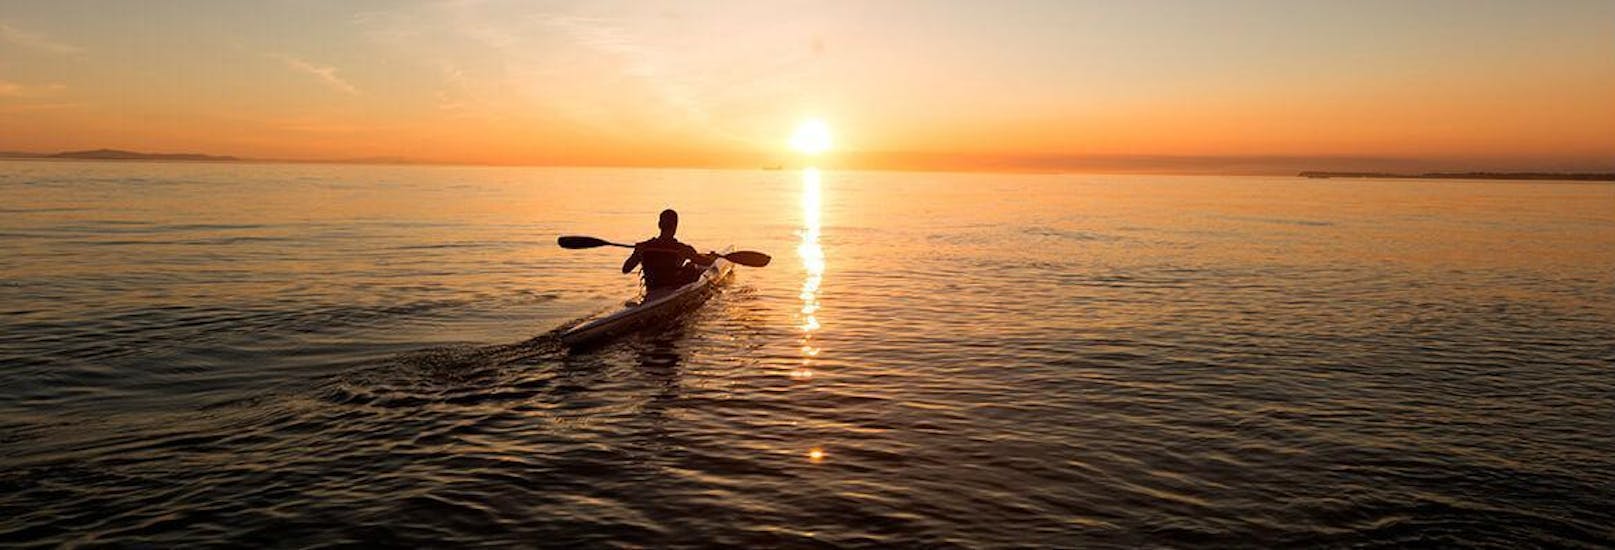 Un chico haciendo kayak durante la puesta de sol con nuestro alquiler de kayaks en Ibiza.